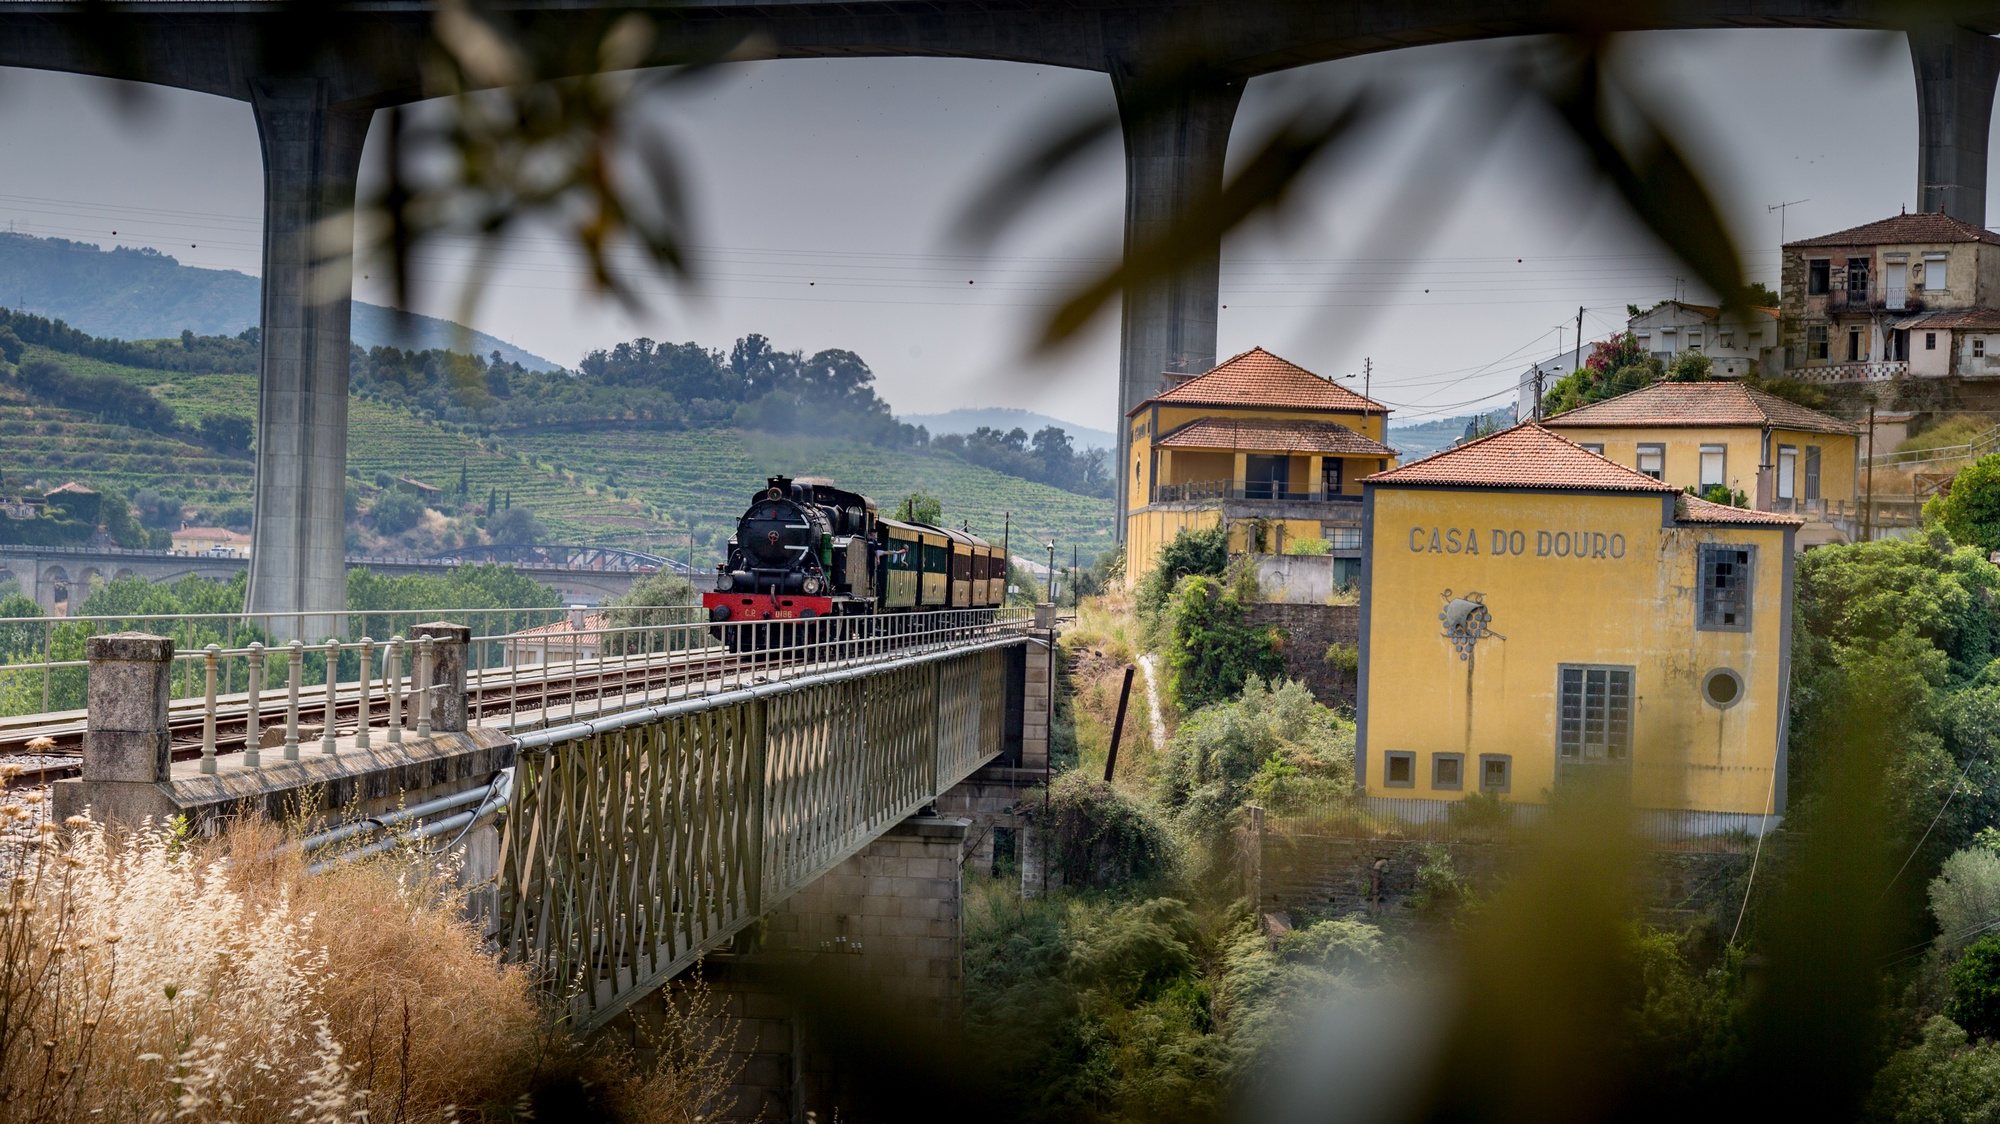 The Douro Historical Train Adventure